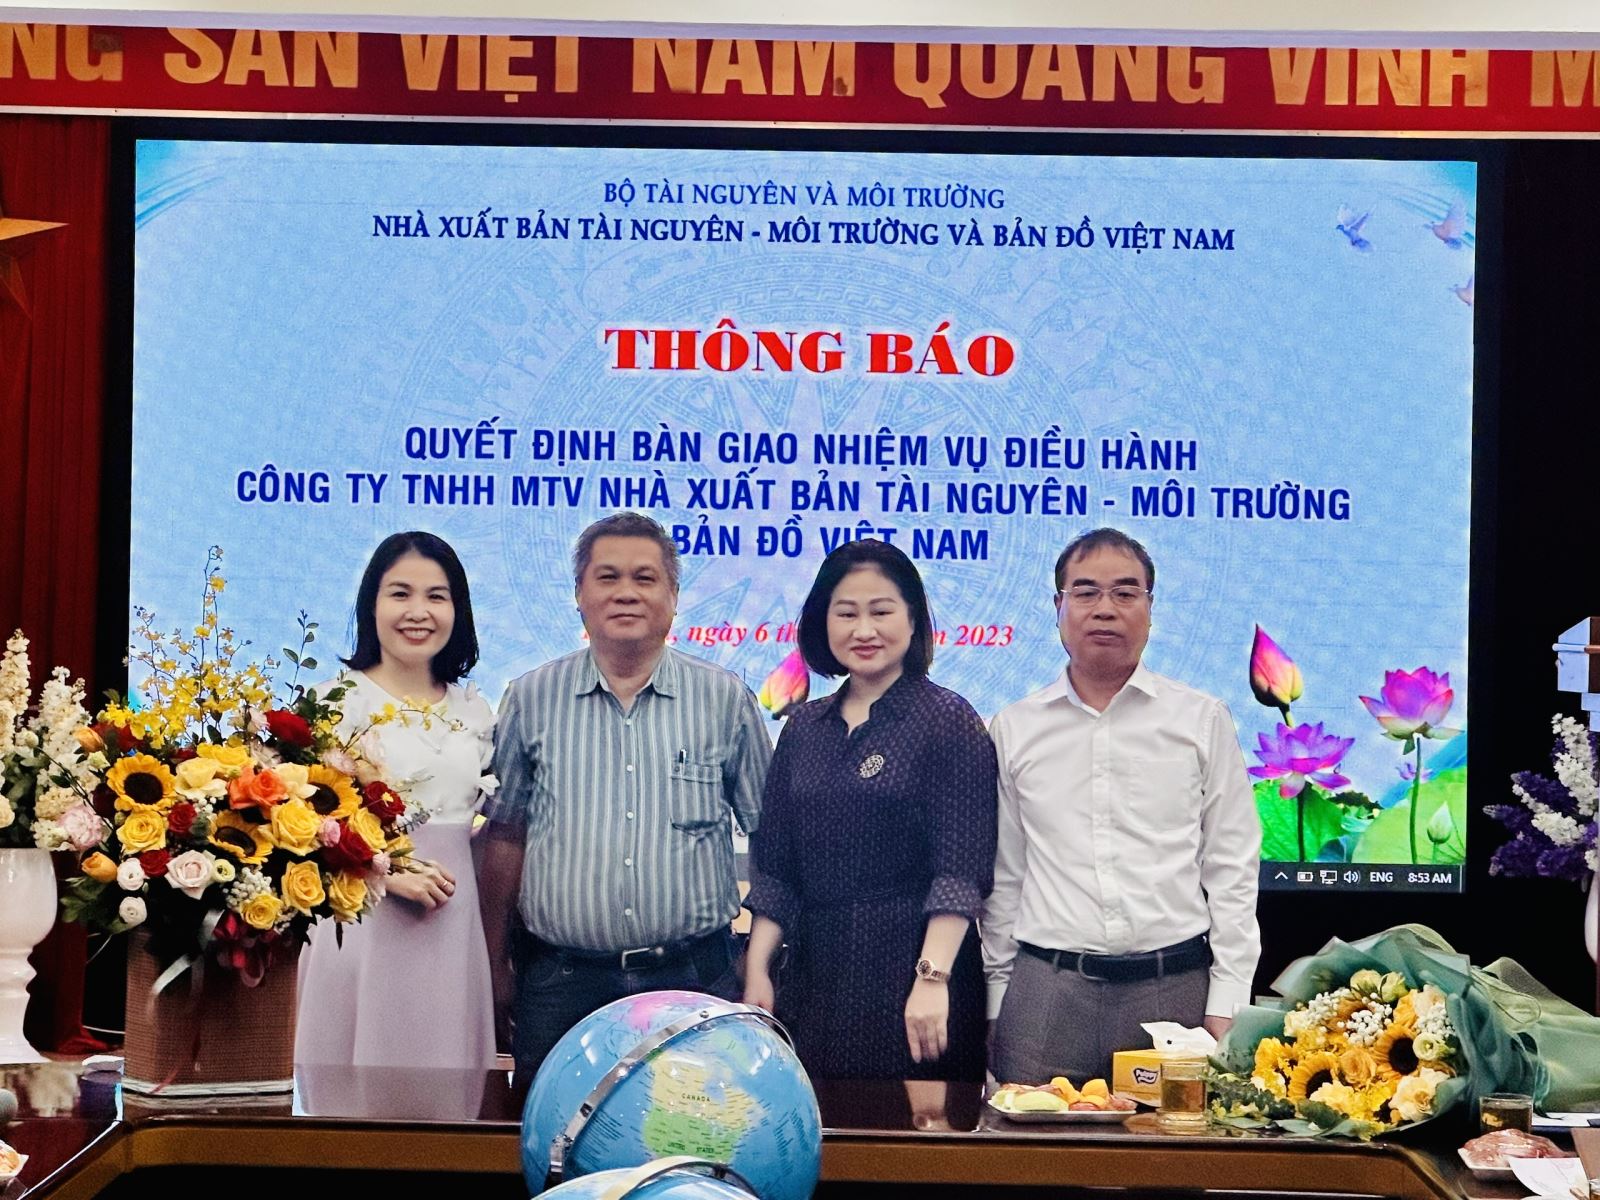 Bàn giao nhiệm vụ điều hành Nhà xuất bản Tài nguyên - Môi trường và Bản đồ Việt Nam